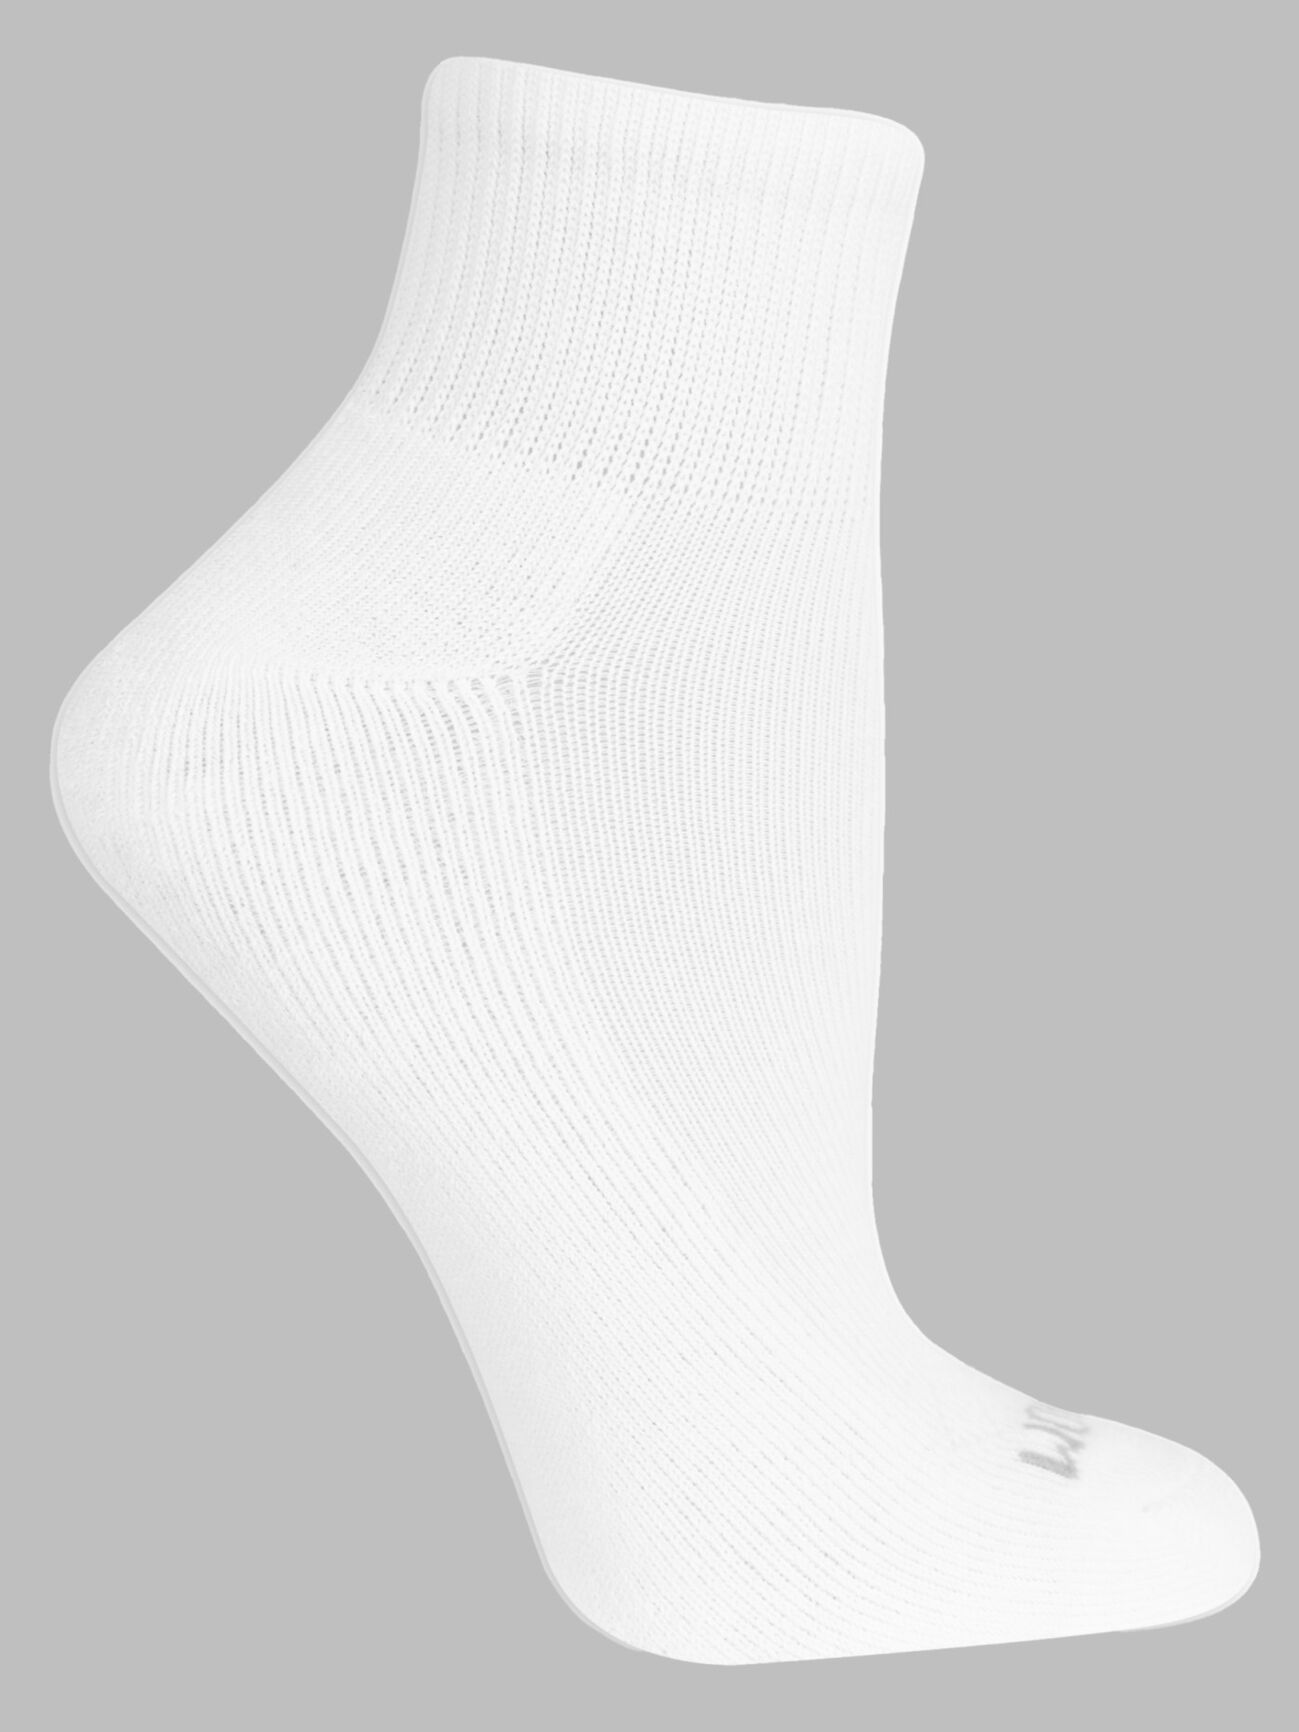 Fruit Of The Loom - Women's 6 Pack Non-Slip Sock (FRW10298T6 AST01)